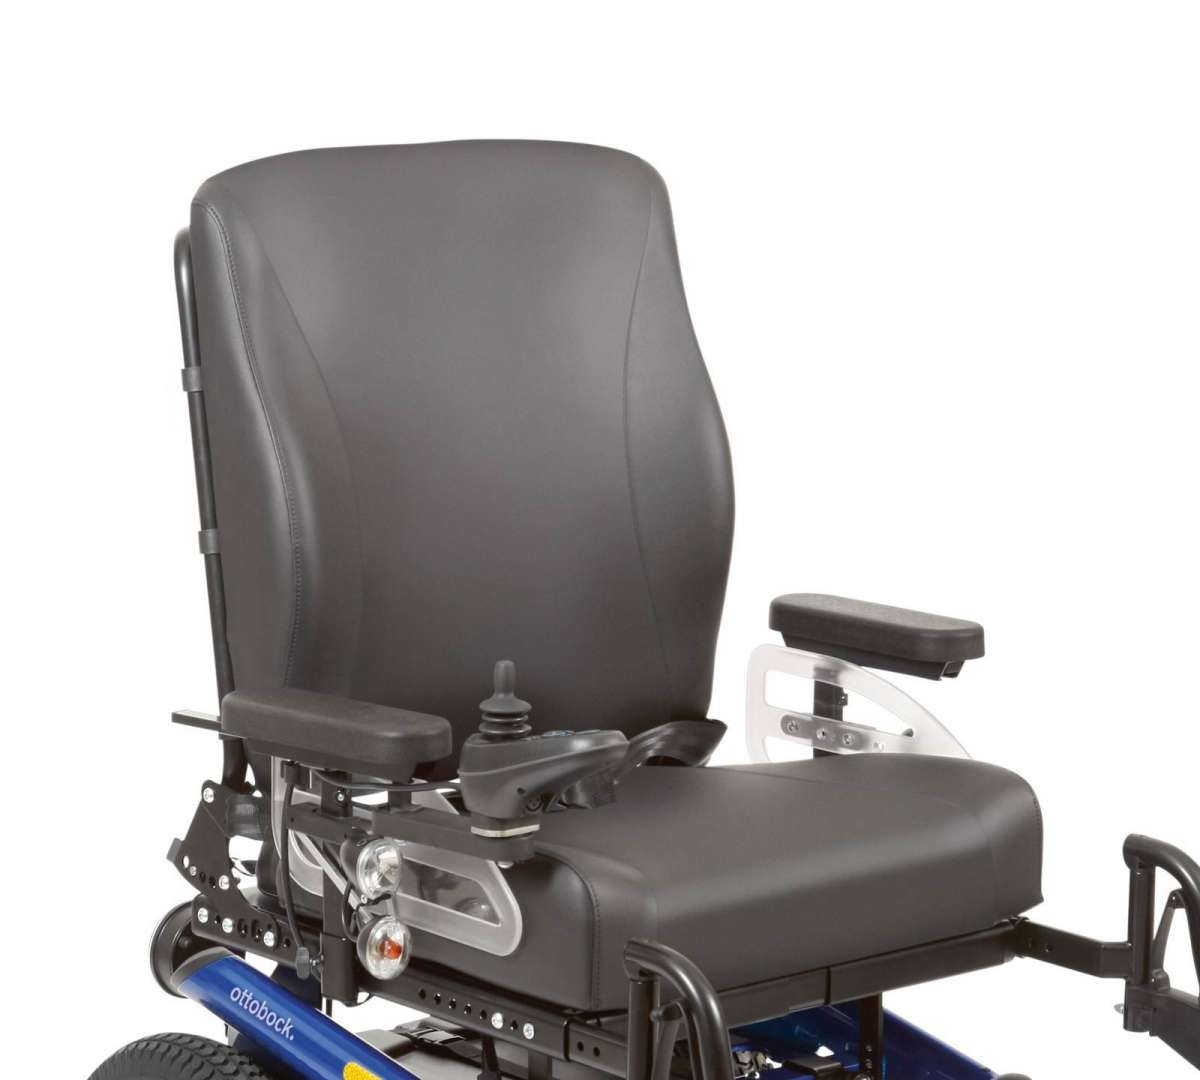 инвалидная коляска с электроприводом A200